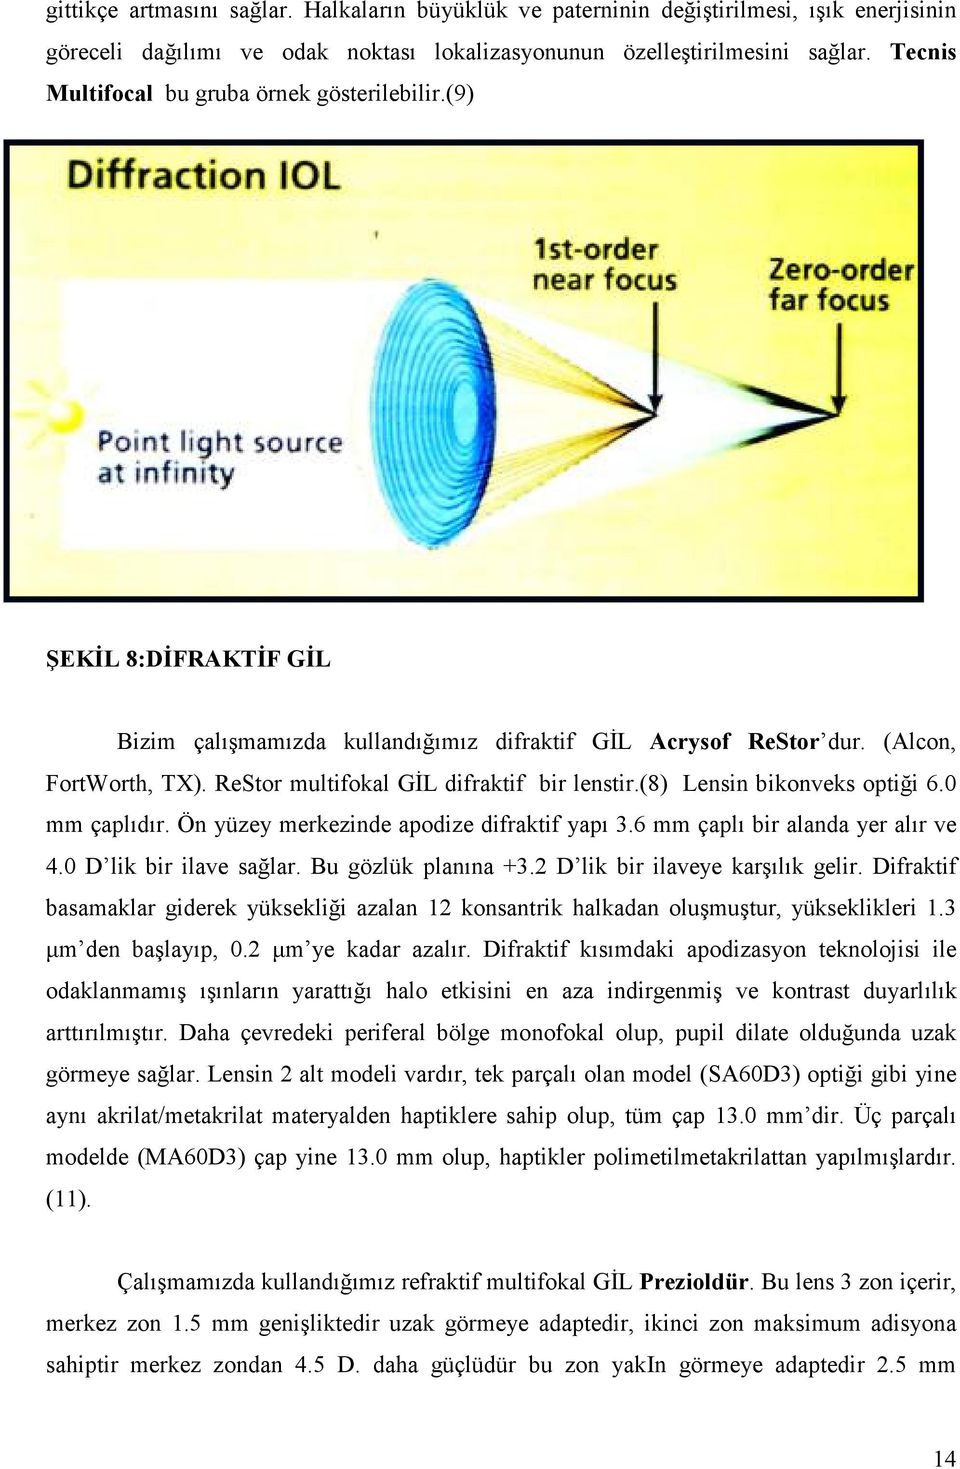 ReStor multifokal GĐL difraktif bir lenstir.(8) Lensin bikonveks optiği 6.0 mm çaplıdır. Ön yüzey merkezinde apodize difraktif yapı 3.6 mm çaplı bir alanda yer alır ve 4.0 D lik bir ilave sağlar.